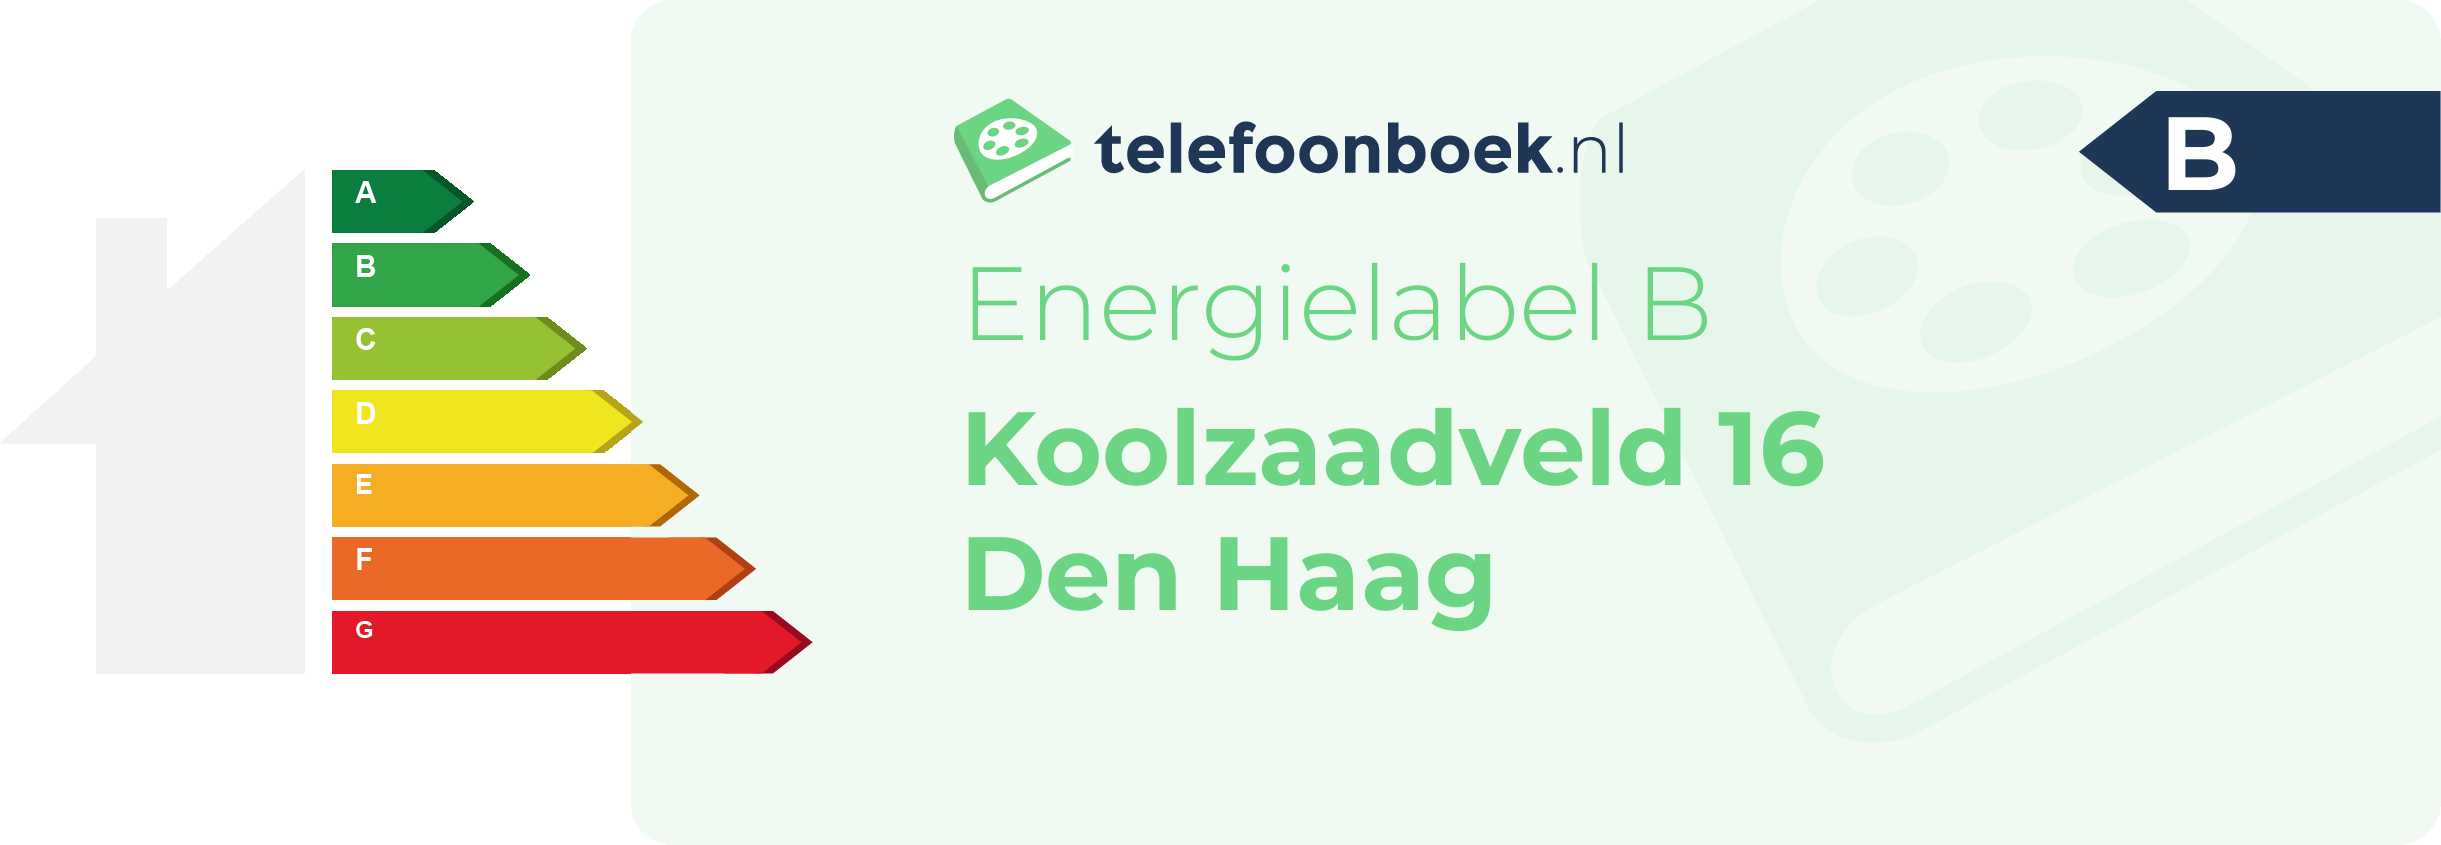 Energielabel Koolzaadveld 16 Den Haag